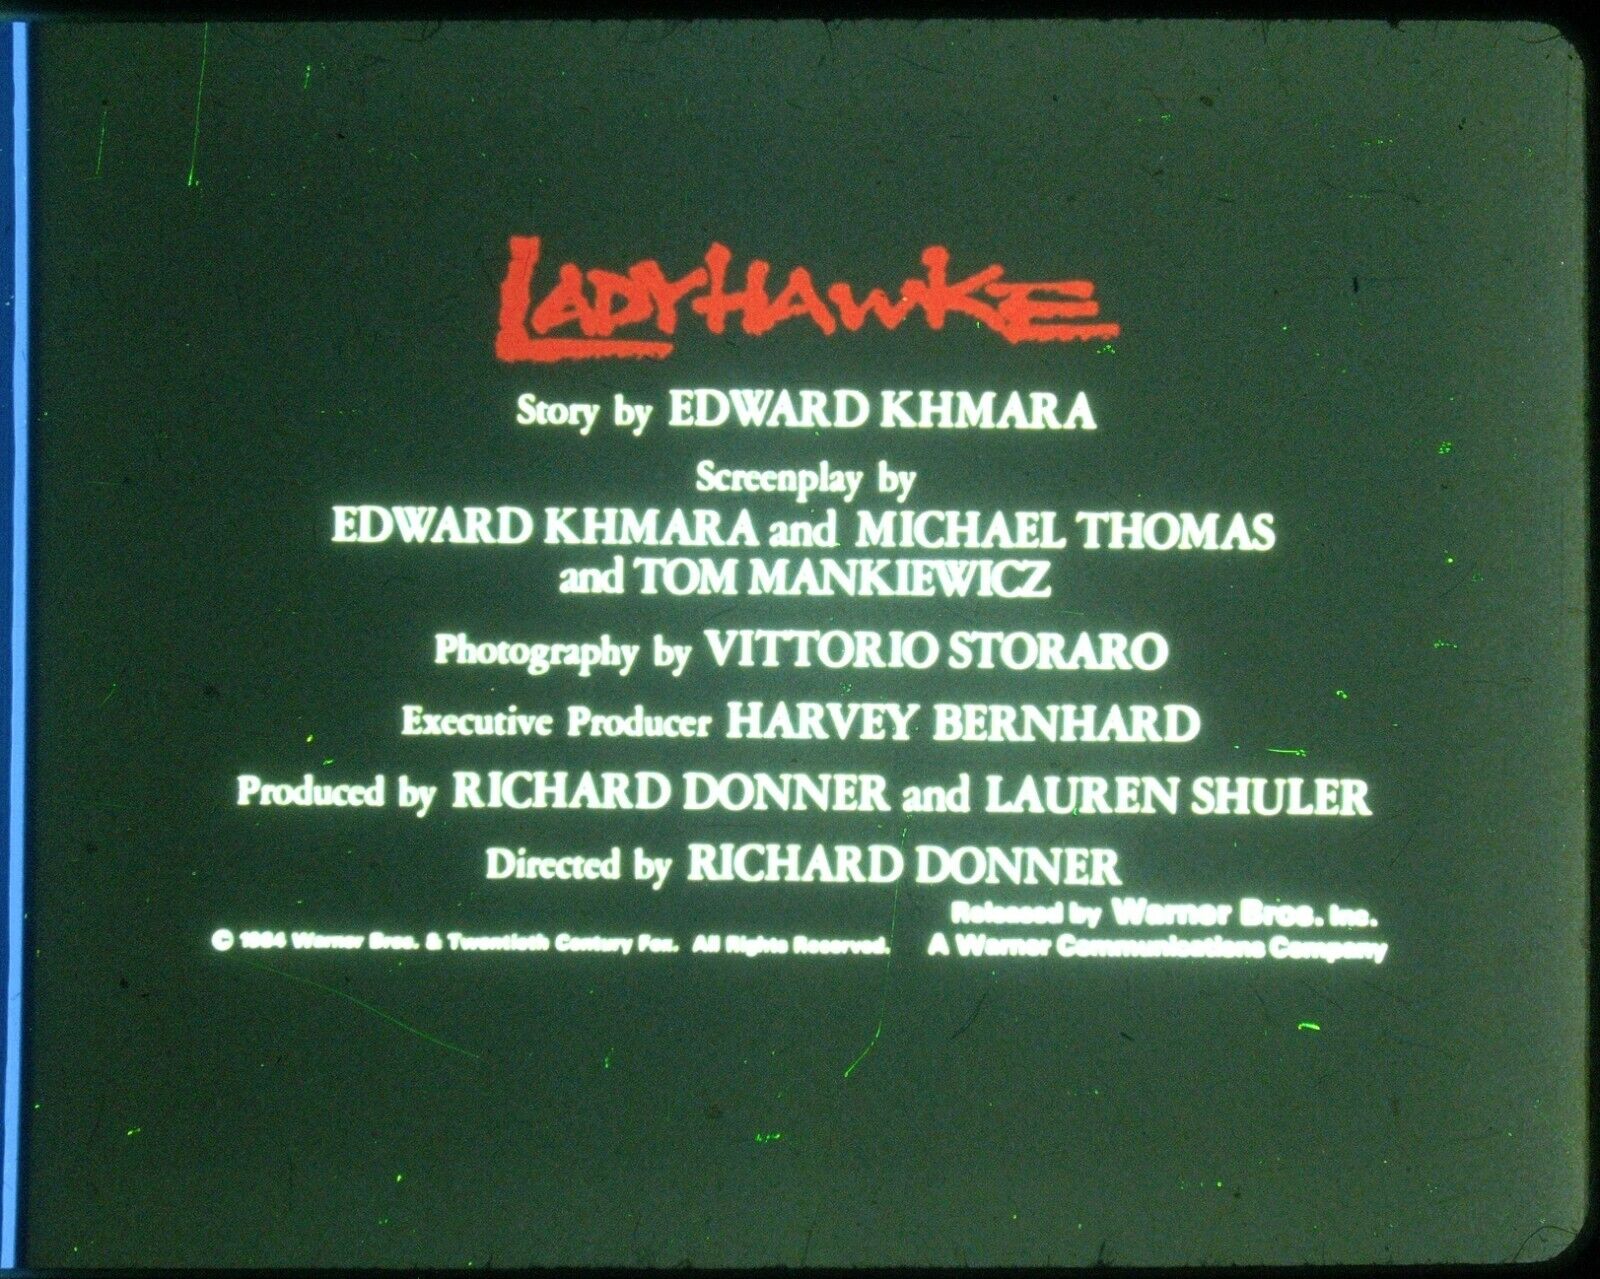 Ladyhawke 35mm Film Clip Slide Movie Credits Story by Edward Khmara LH-26